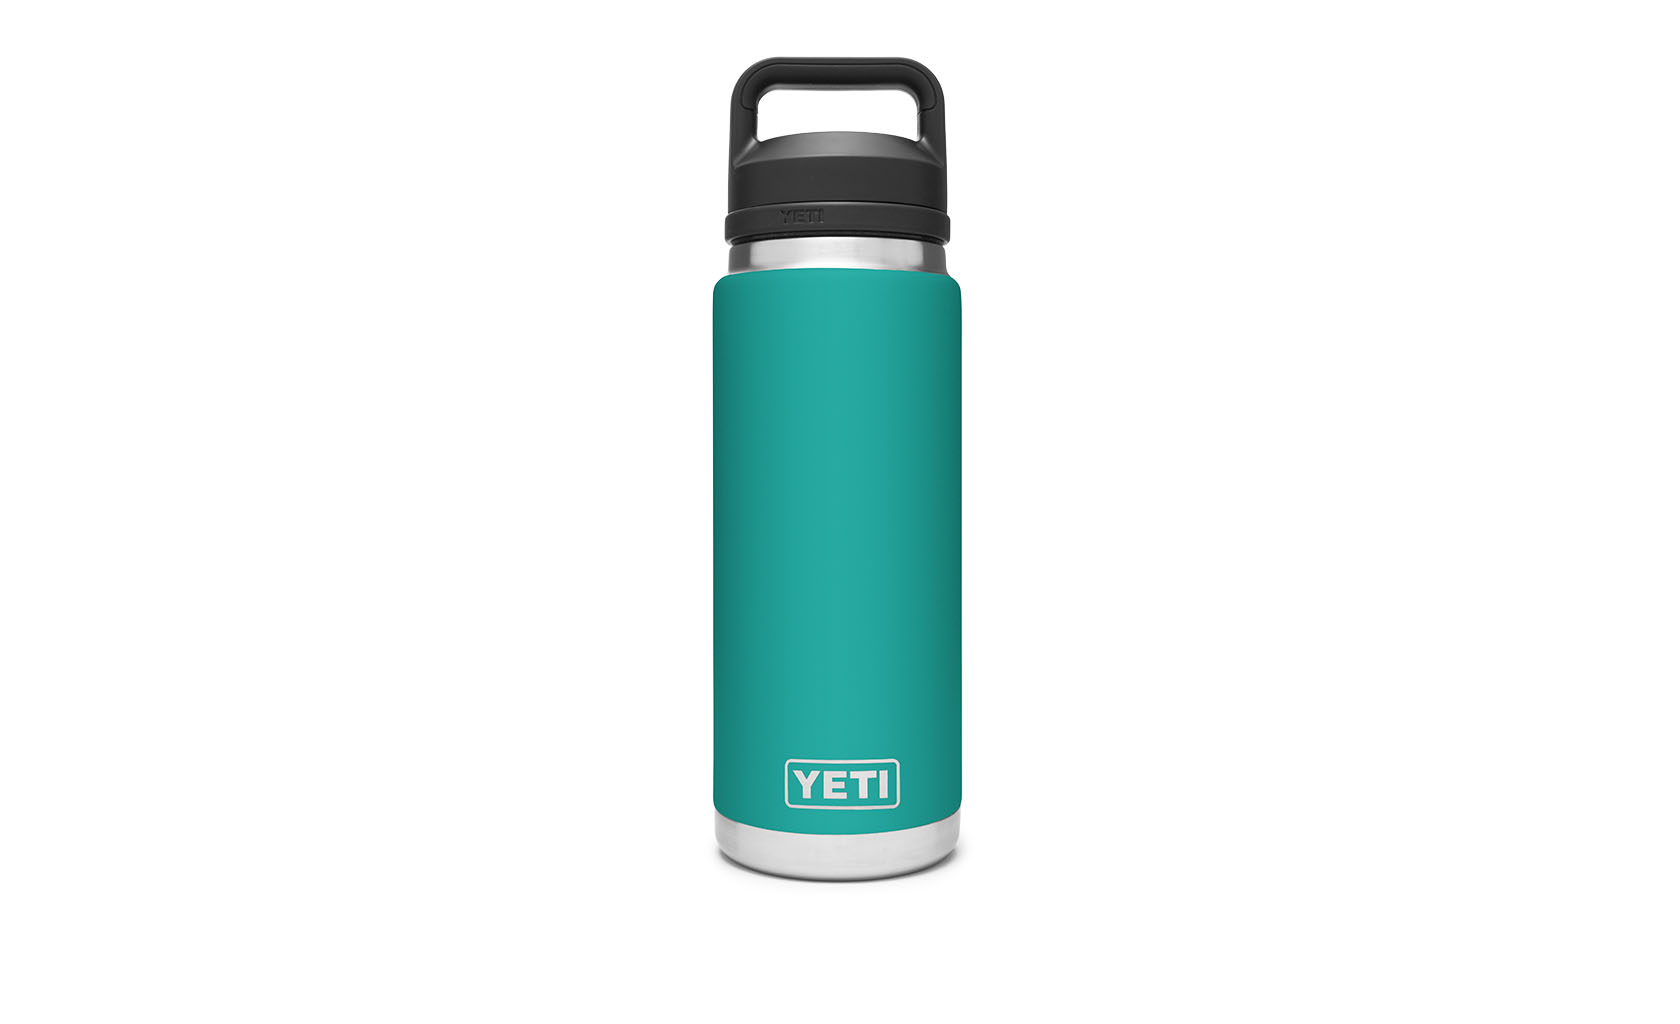 YETI / Rambler 26 oz Bottle With Chug Cap - Aquifer Blue